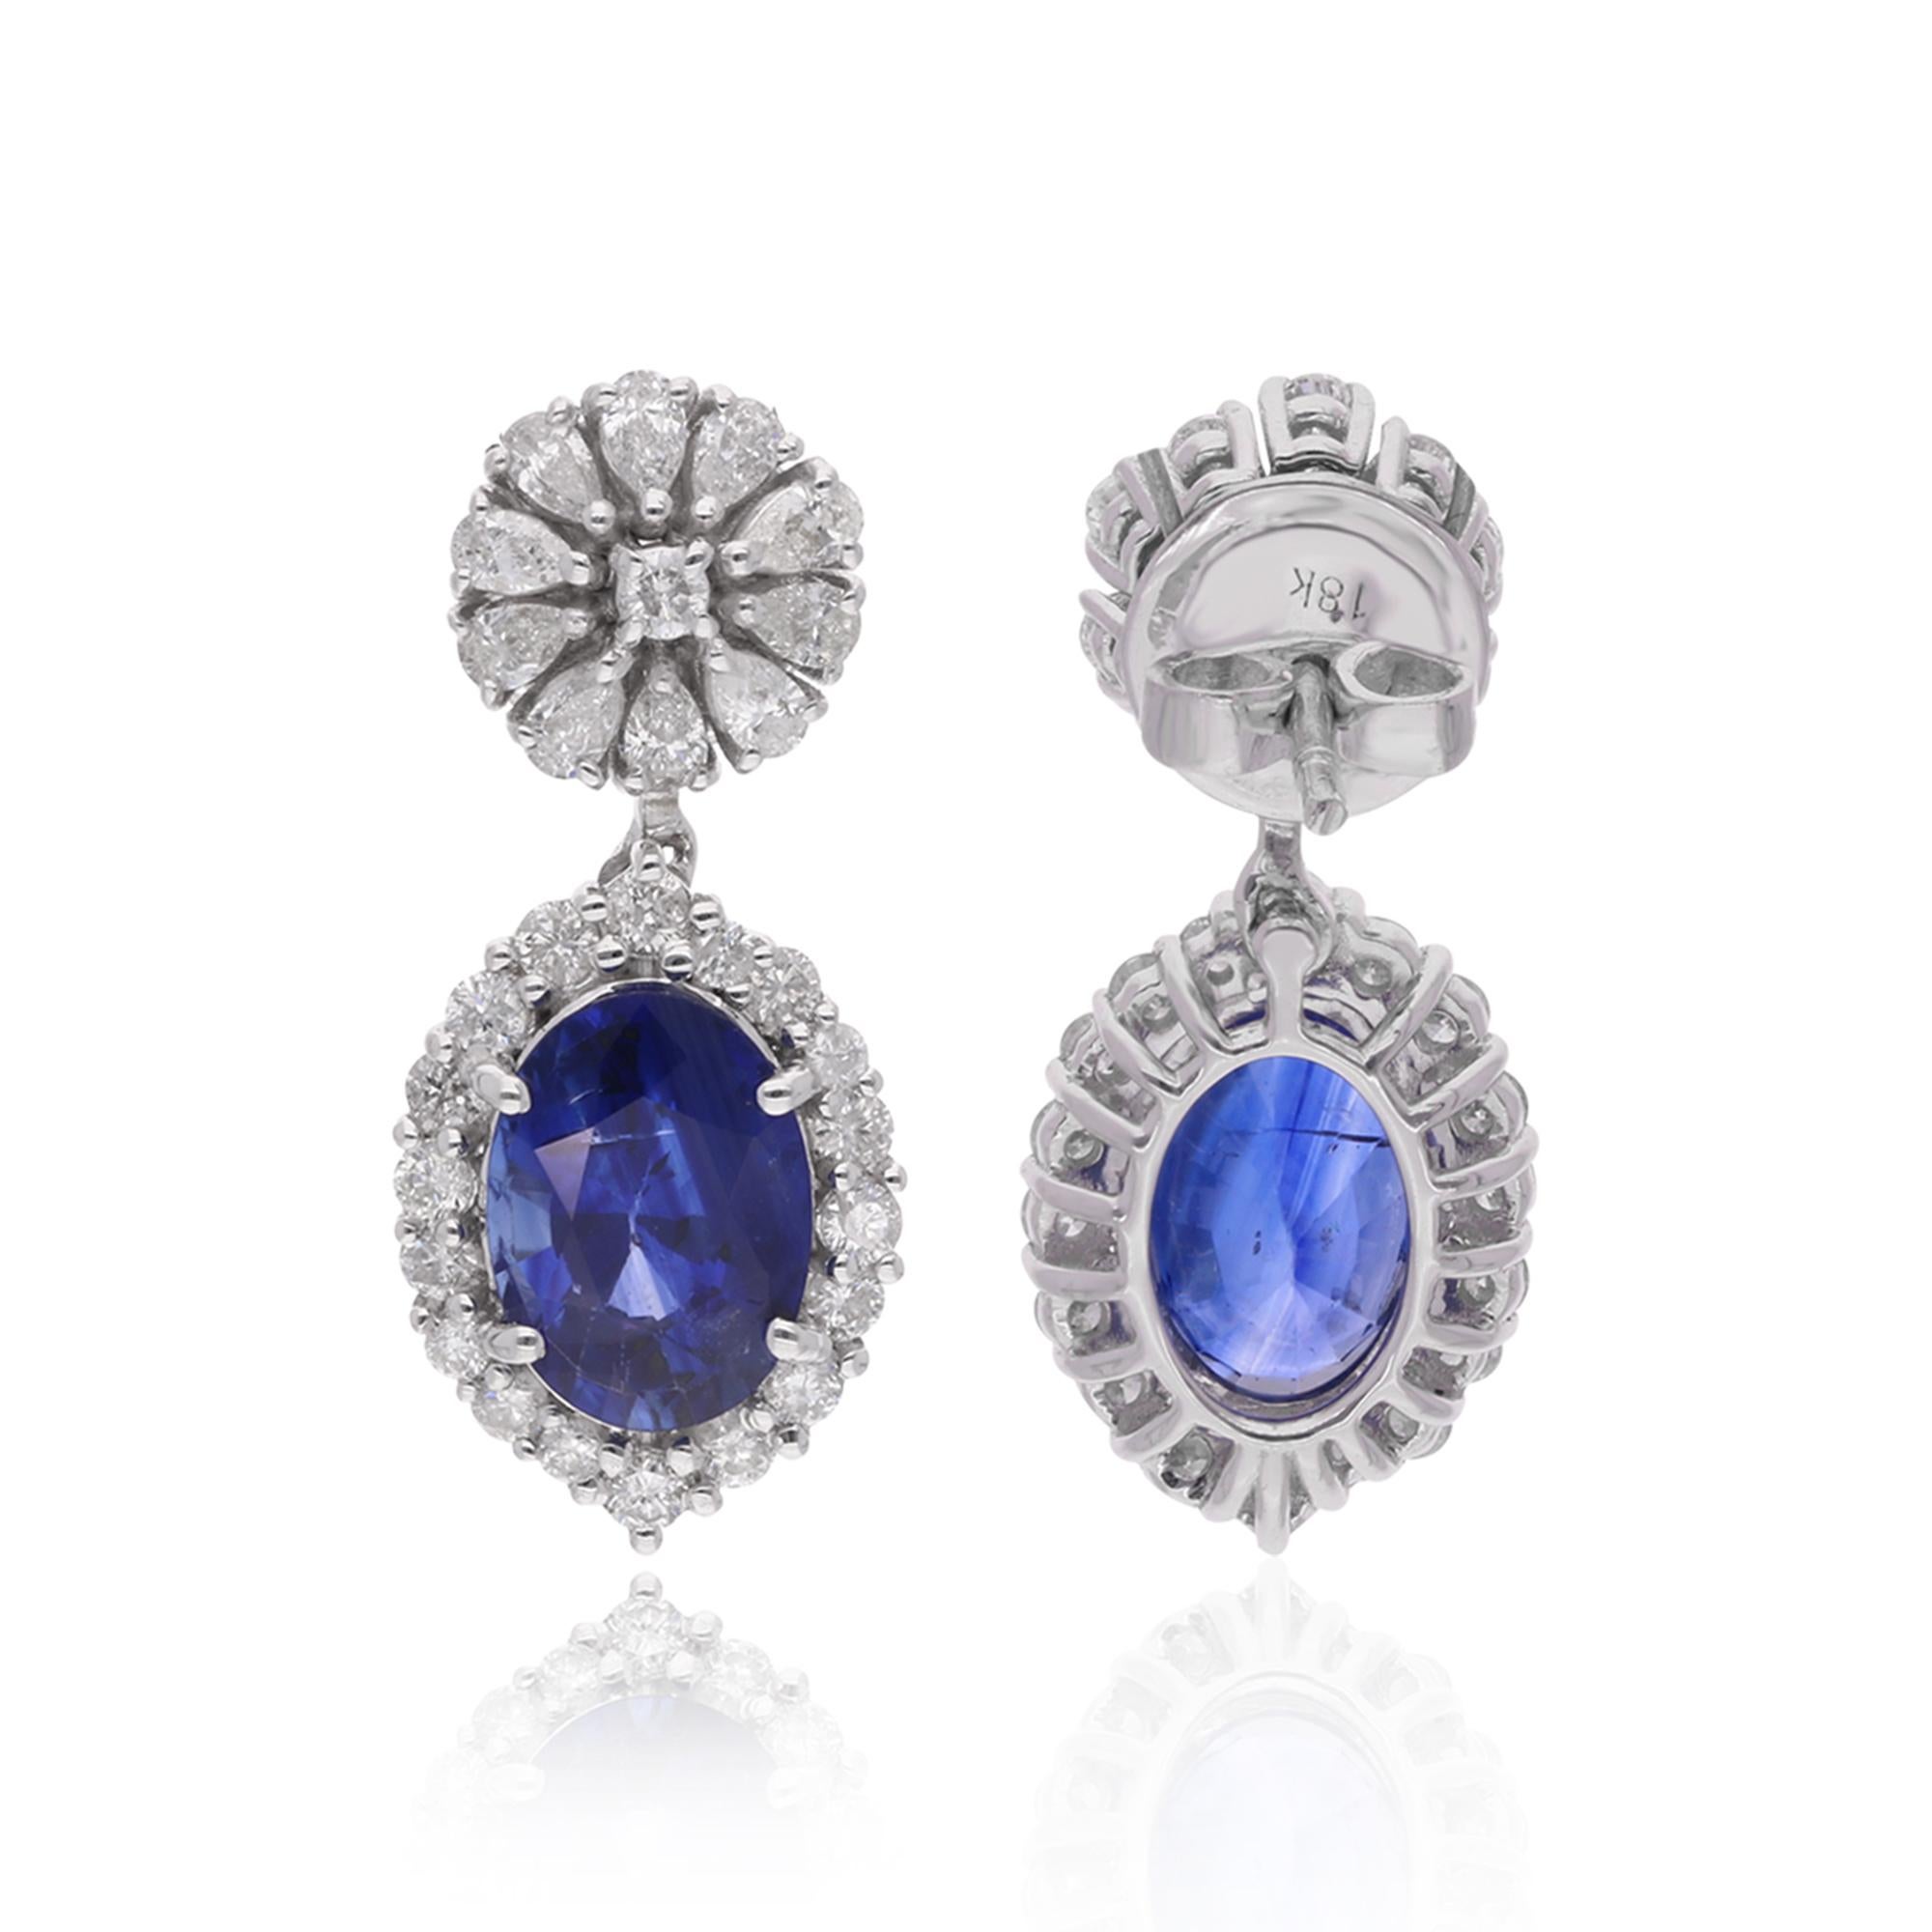 Ces magnifiques boucles d'oreilles pendantes en diamant et saphir sont le parfait mélange des styles classique et contemporain. Réalisée en or blanc massif 18 carats, chaque boucle d'oreille est ornée d'un superbe saphir entouré d'un halo de